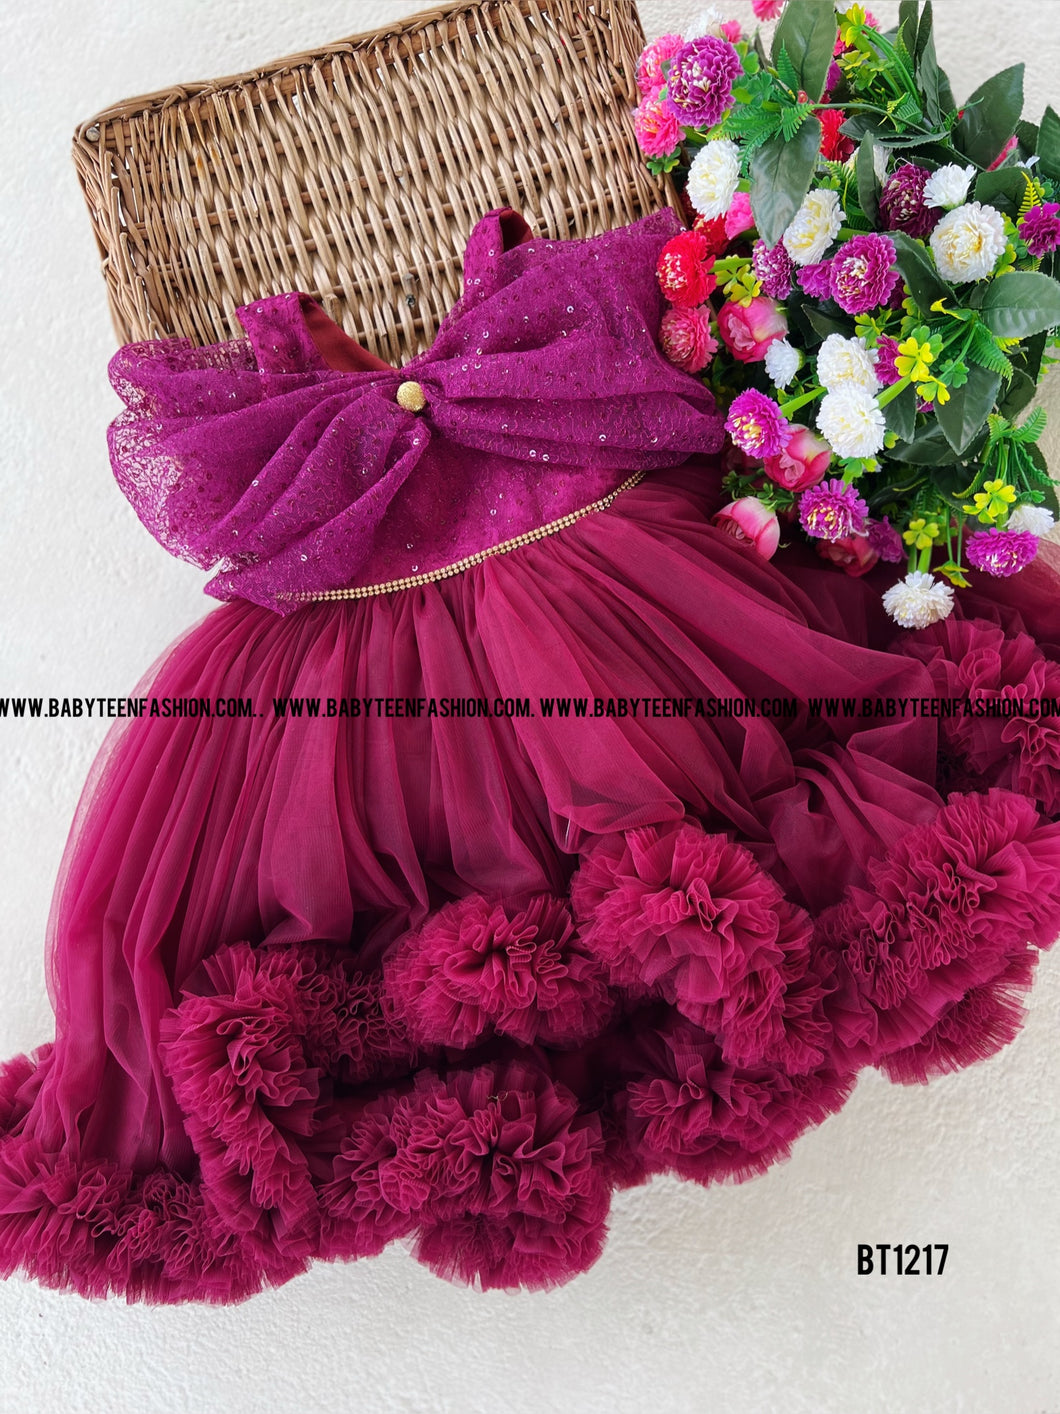 BT1217 Burgundy Blossom Gala Dress – Elegance in Every Twirl